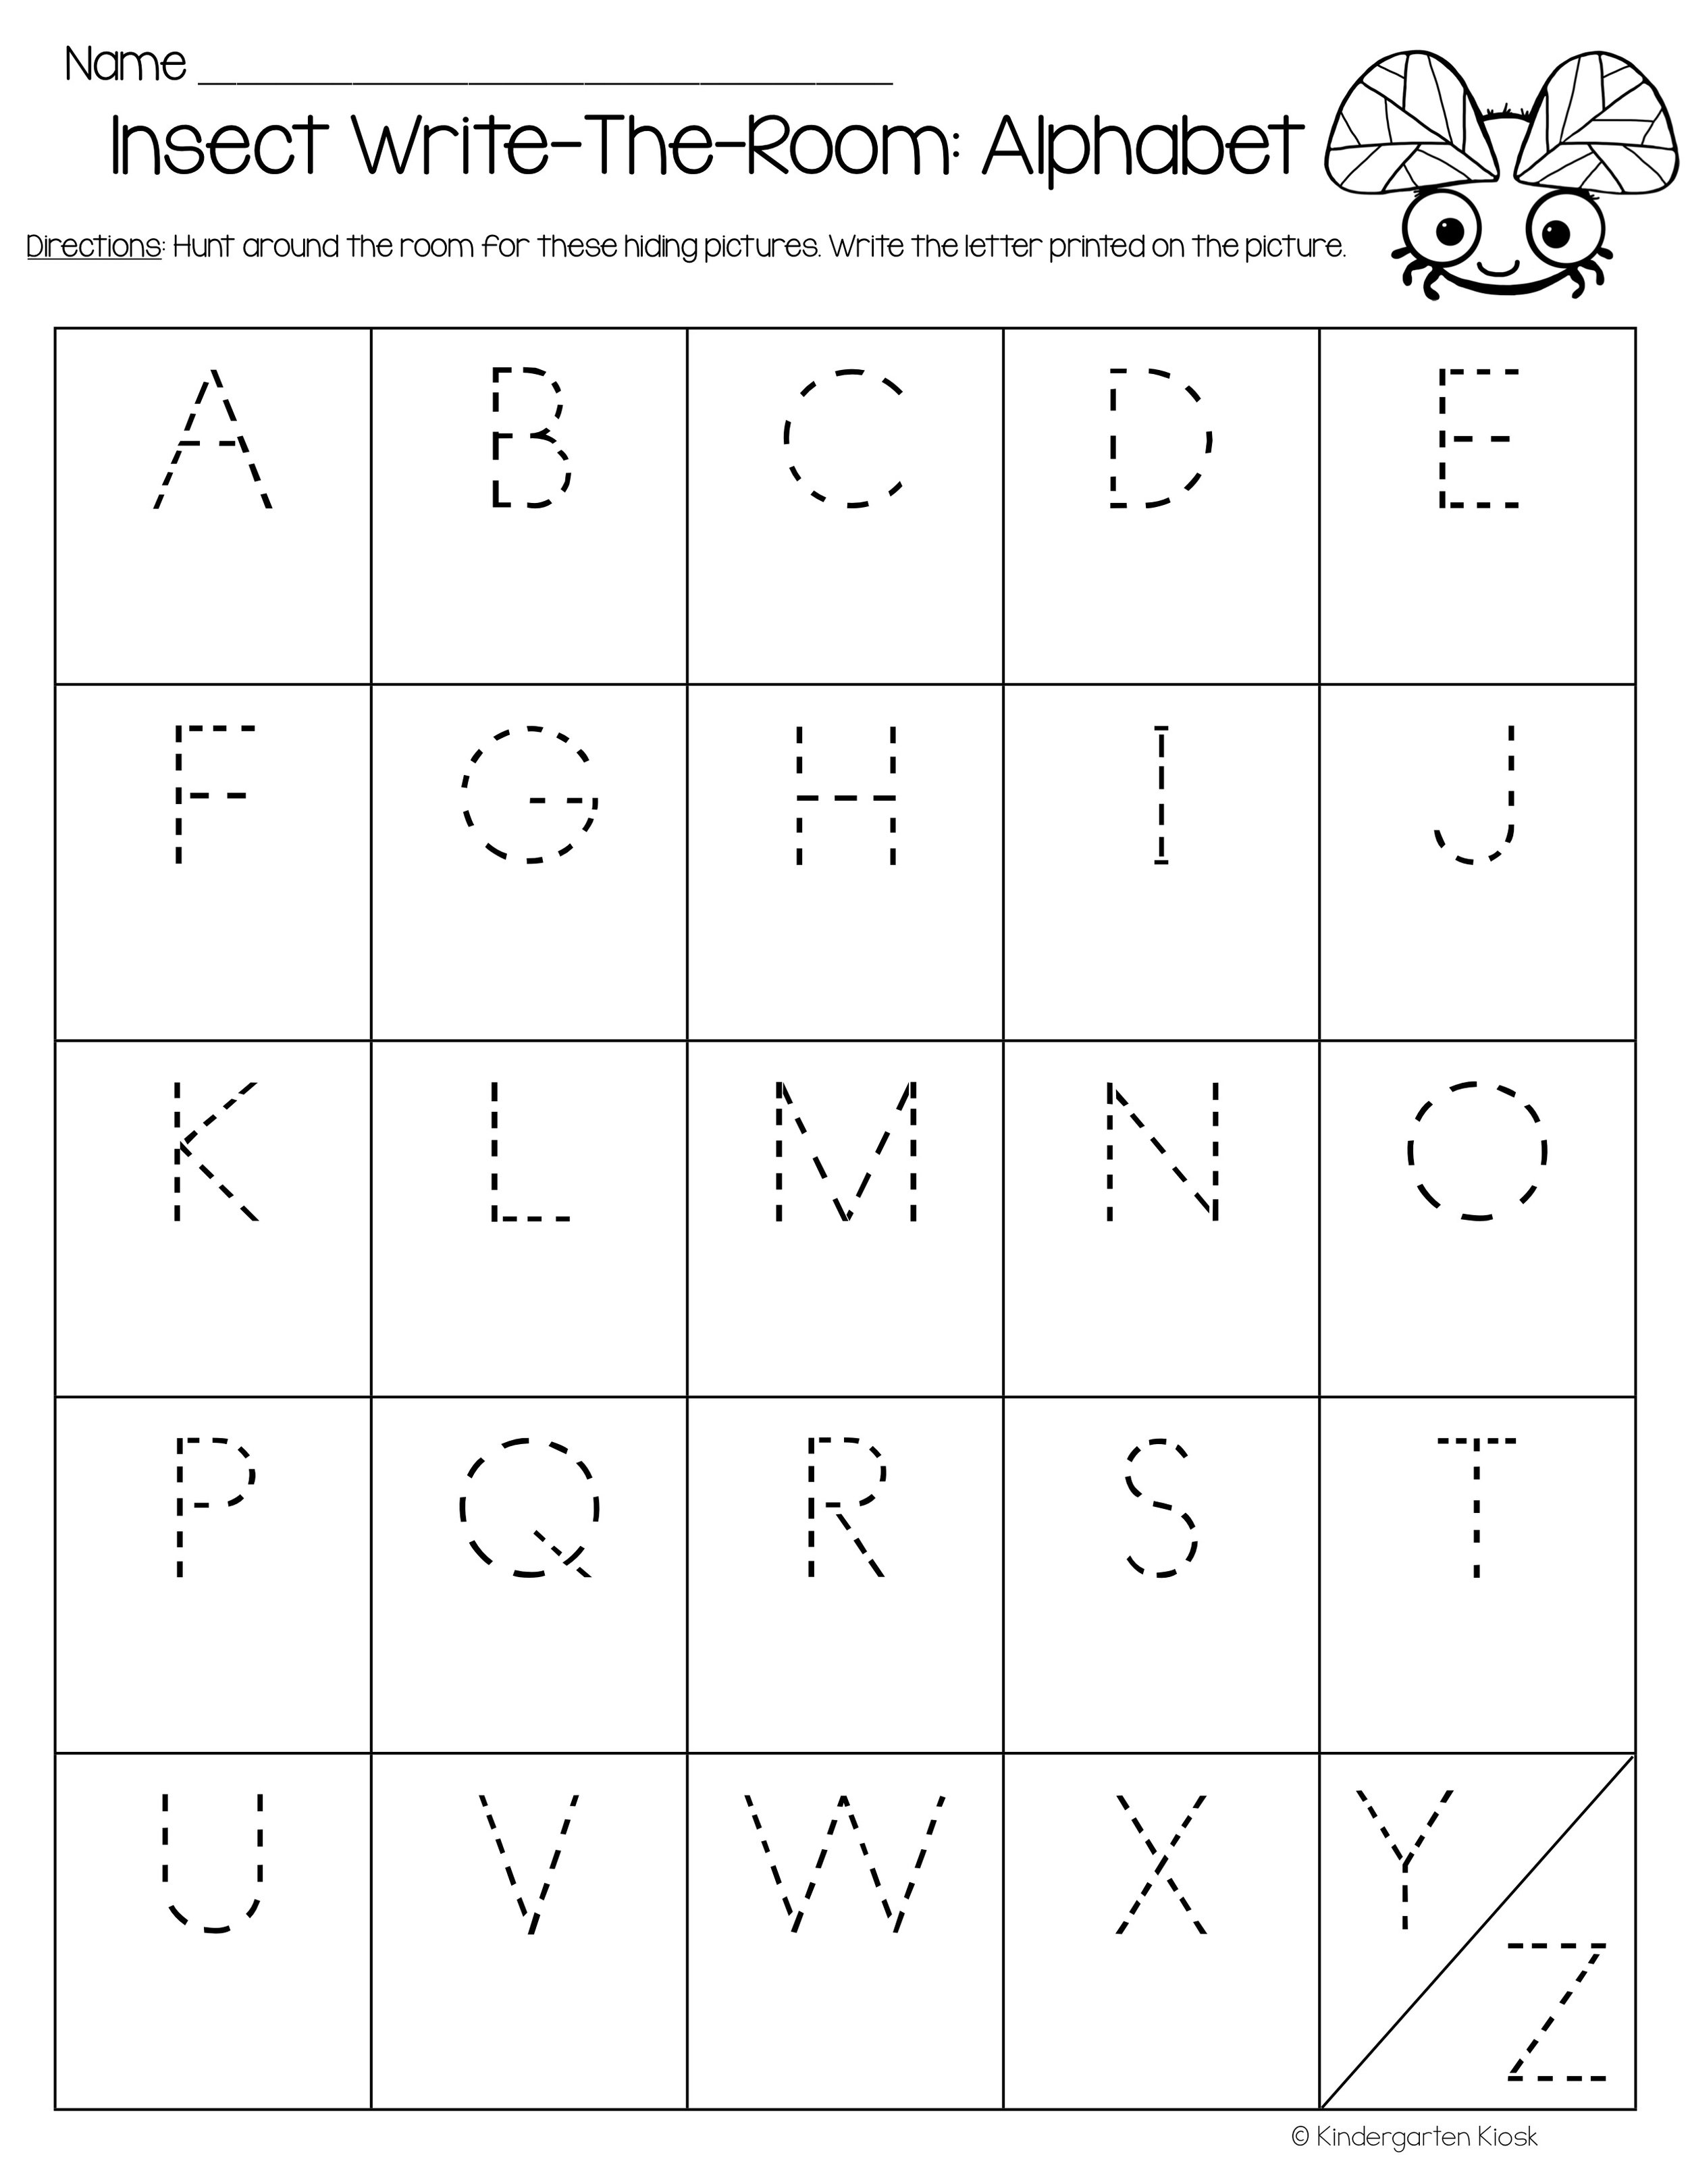 Insect Writing Activities — Kindergarten Kiosk